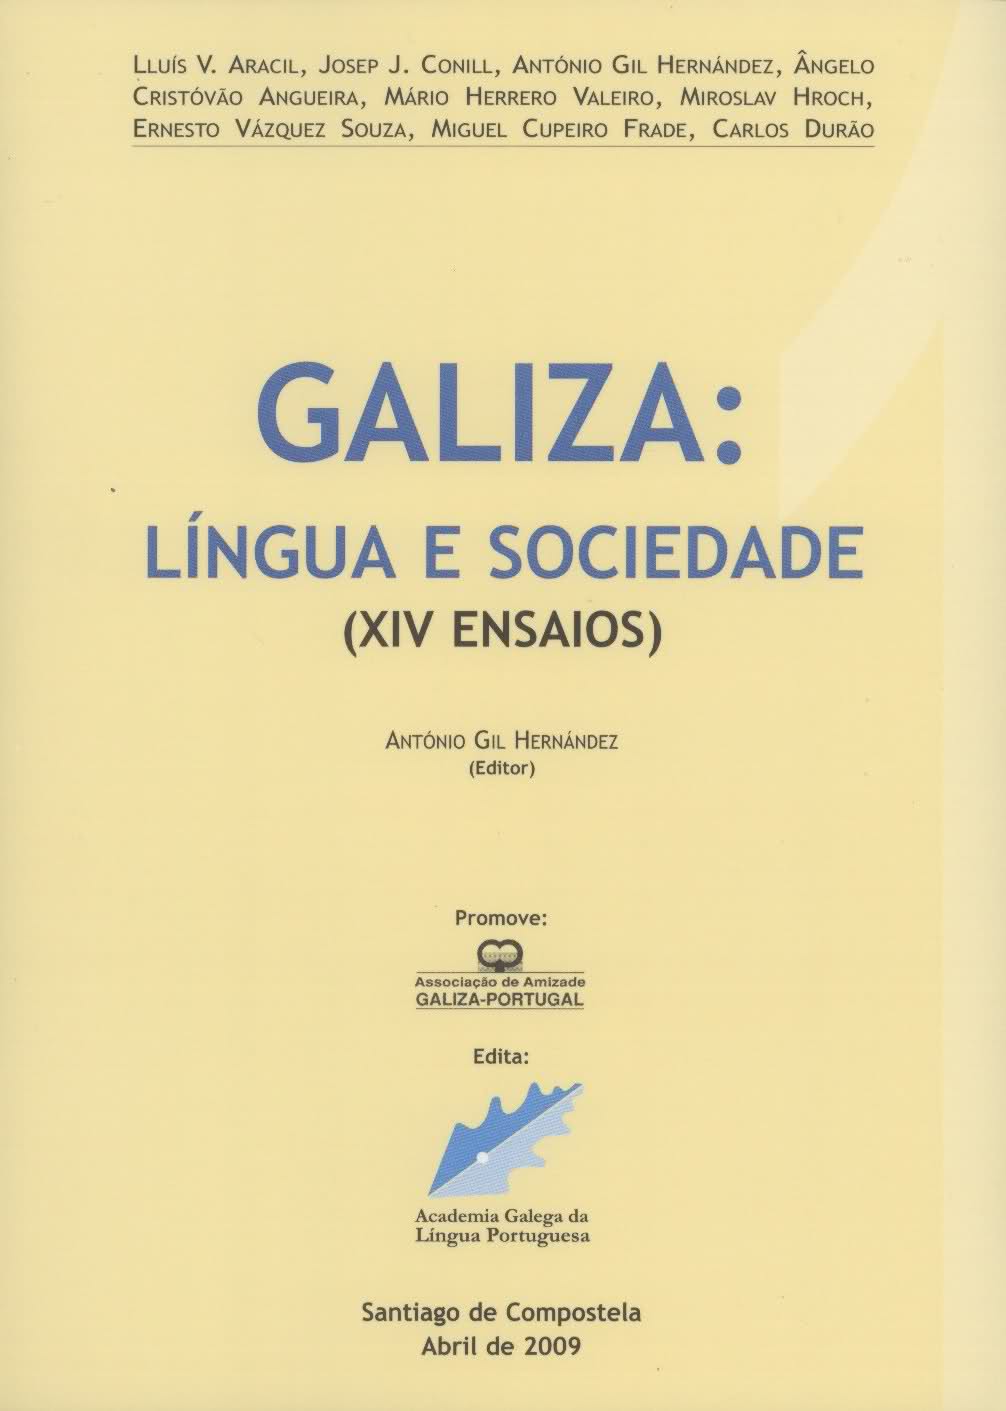 Galiza: Língua e Sociedade (XIV Ensaios) - Anexo 1 do Boletim da AGLP